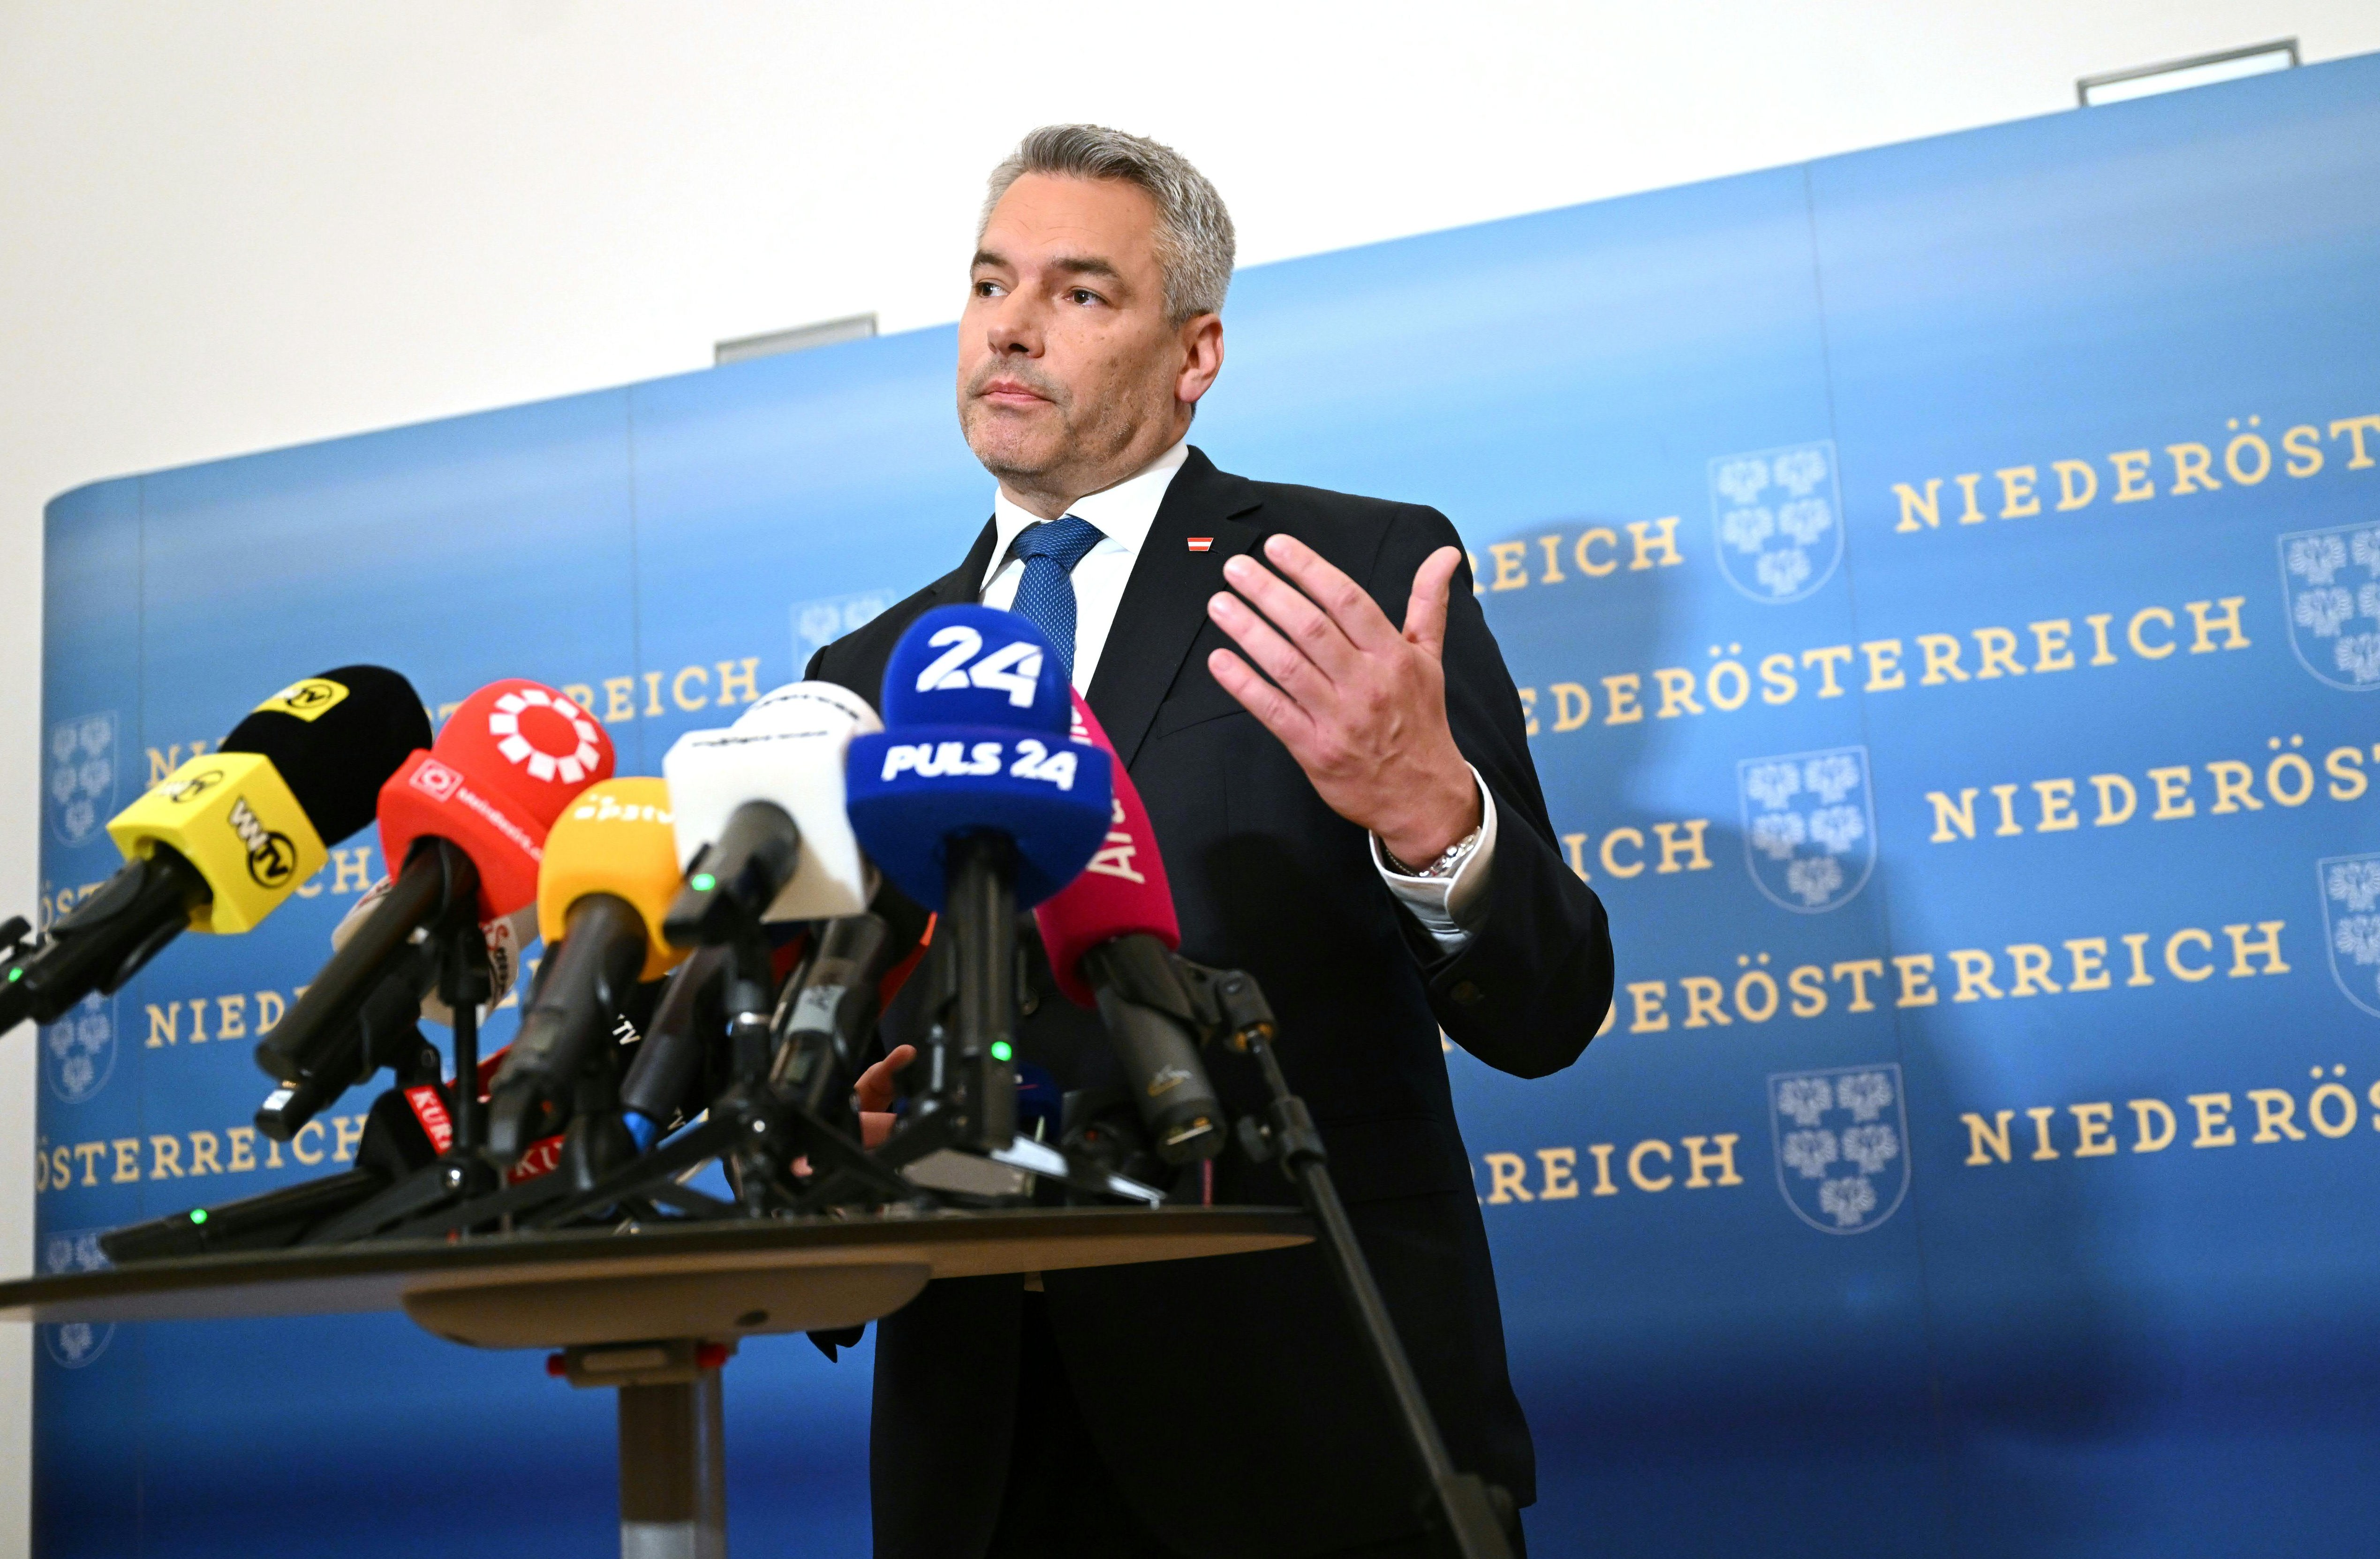 Österreich - ÖVP verliert absolute Mehrheit bei Landtagswahl in Niederösterreich